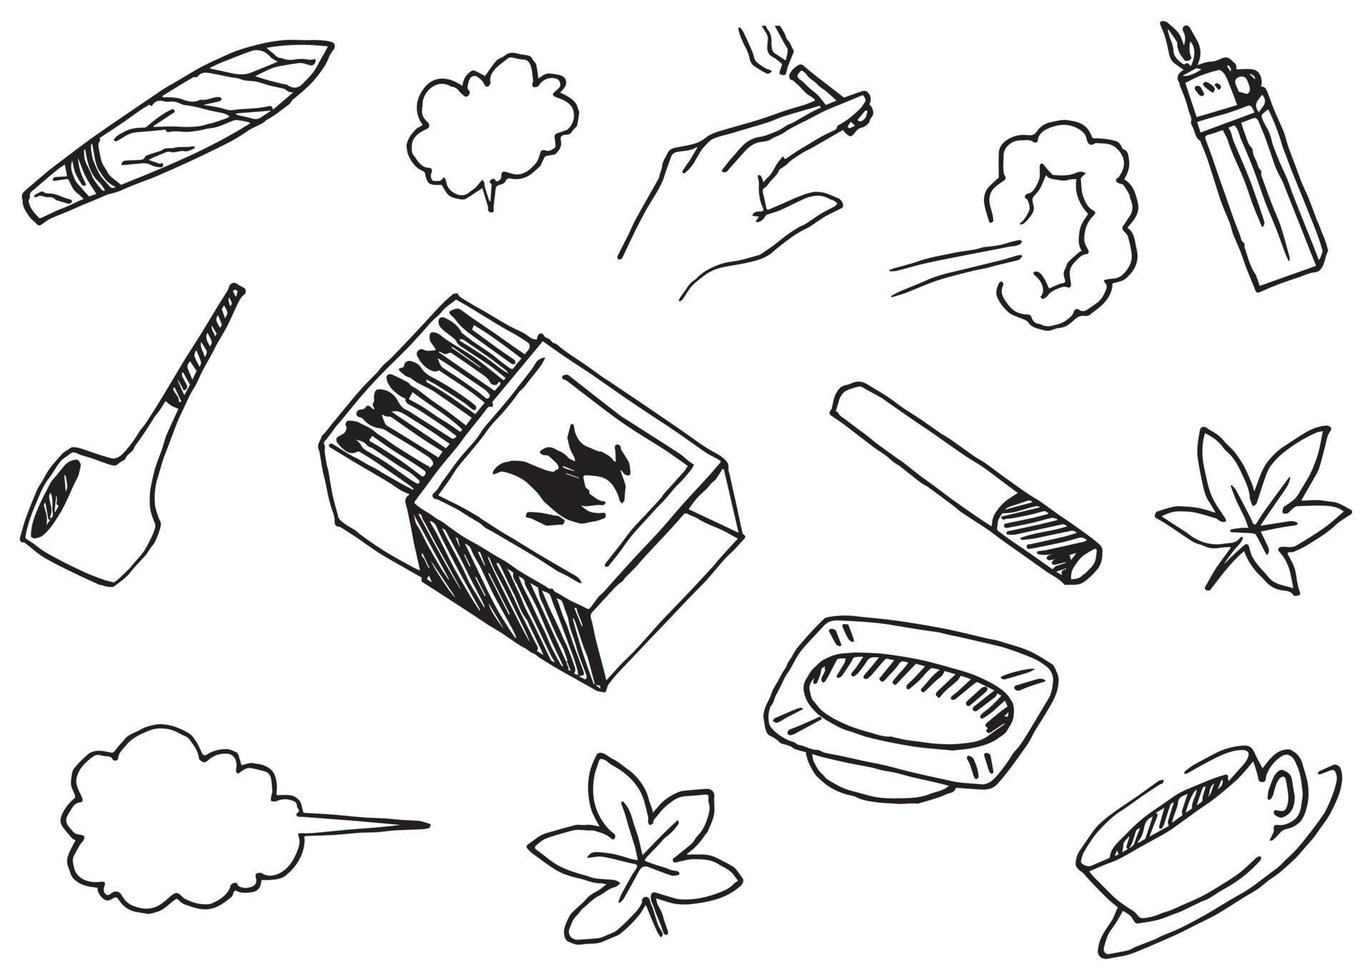 handritade set element, pipor, tändstickor, askfat, cigaretter, tobak, cigarrer och andra element i handritad stil för konceptdesign. klottrar illustration. vektor illustration.